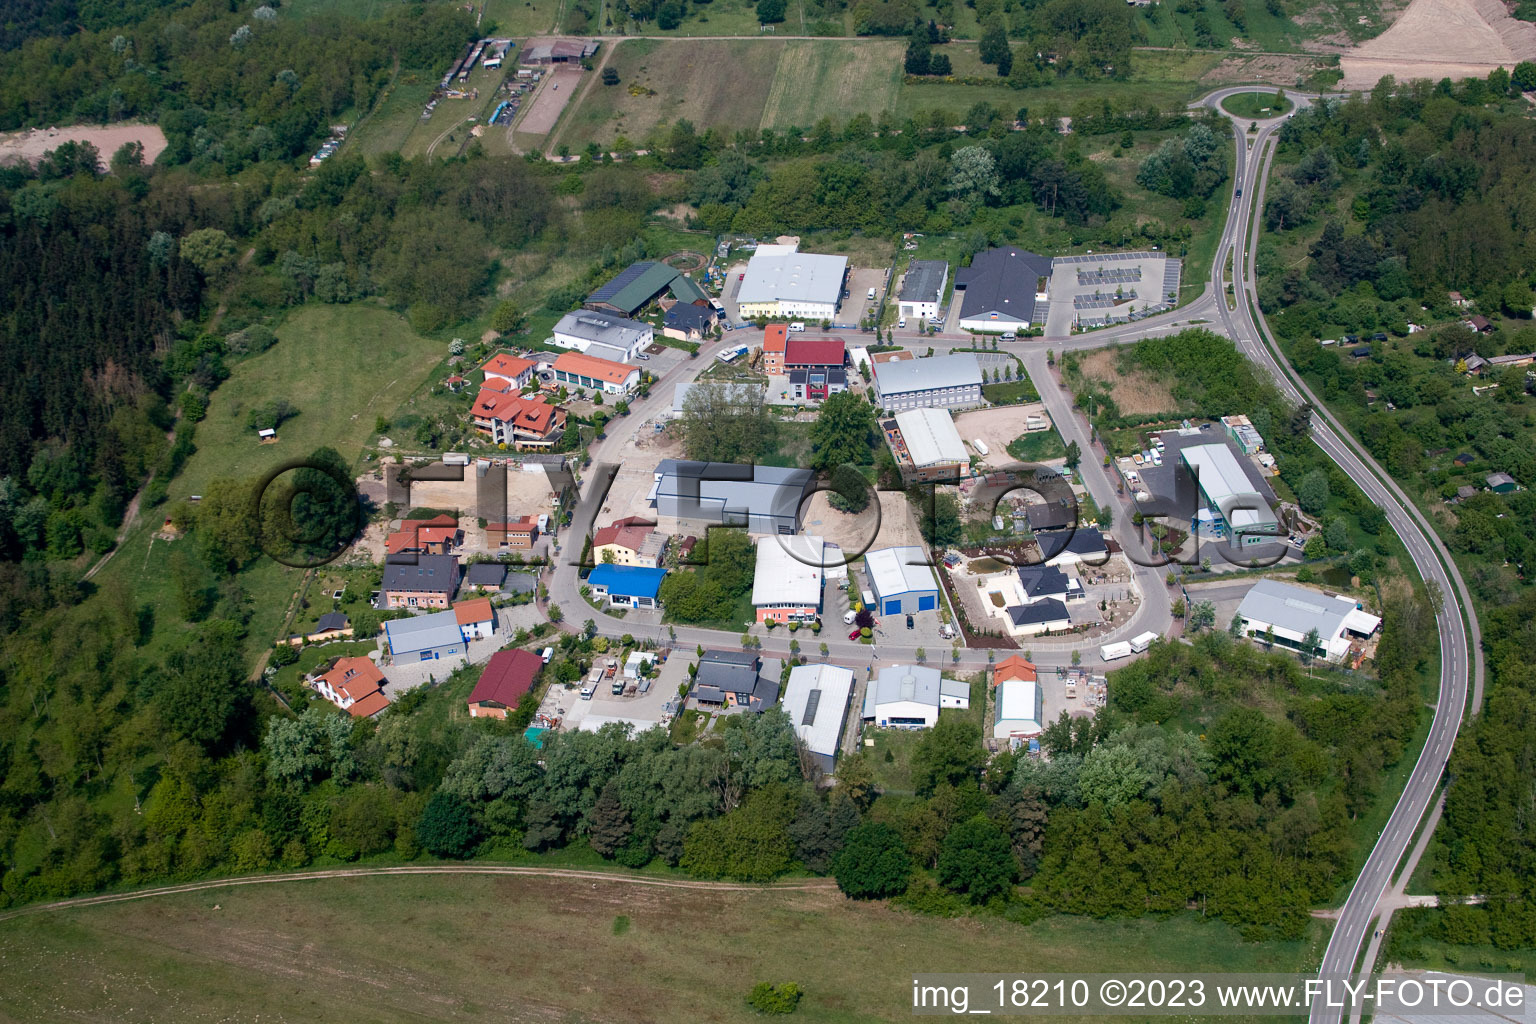 Vue aérienne de Zone industrielle à Jockgrim dans le département Rhénanie-Palatinat, Allemagne